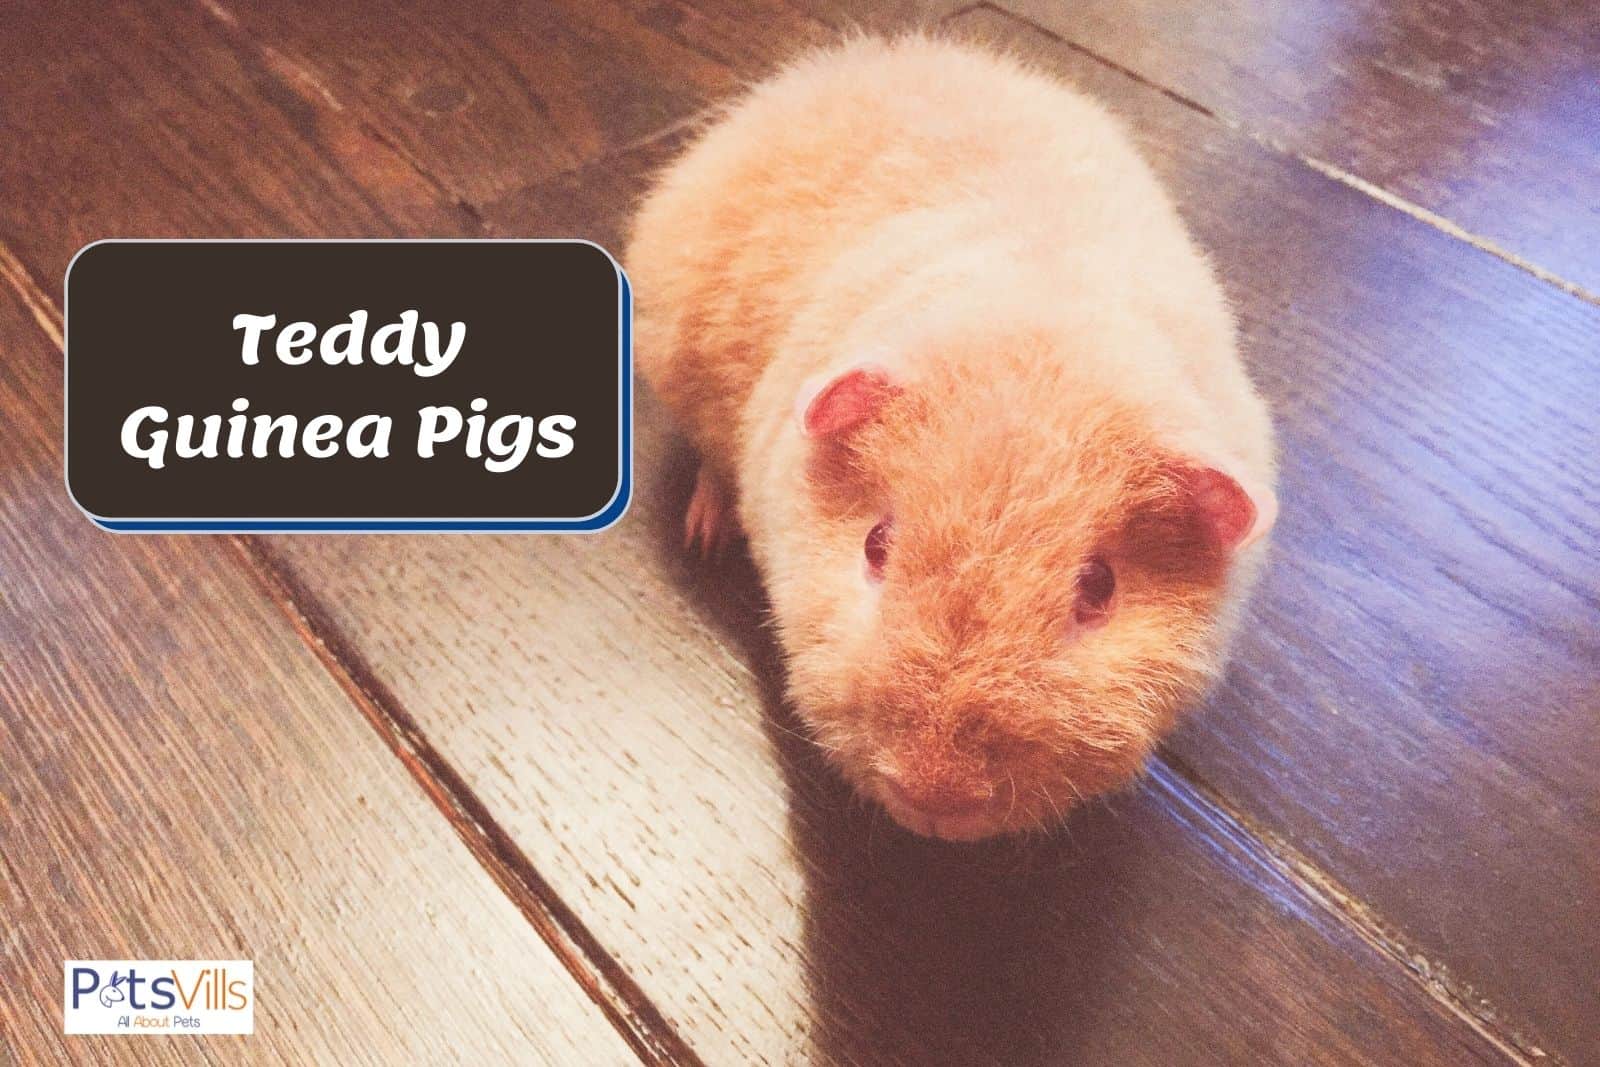 a tiny and cute guinea pig